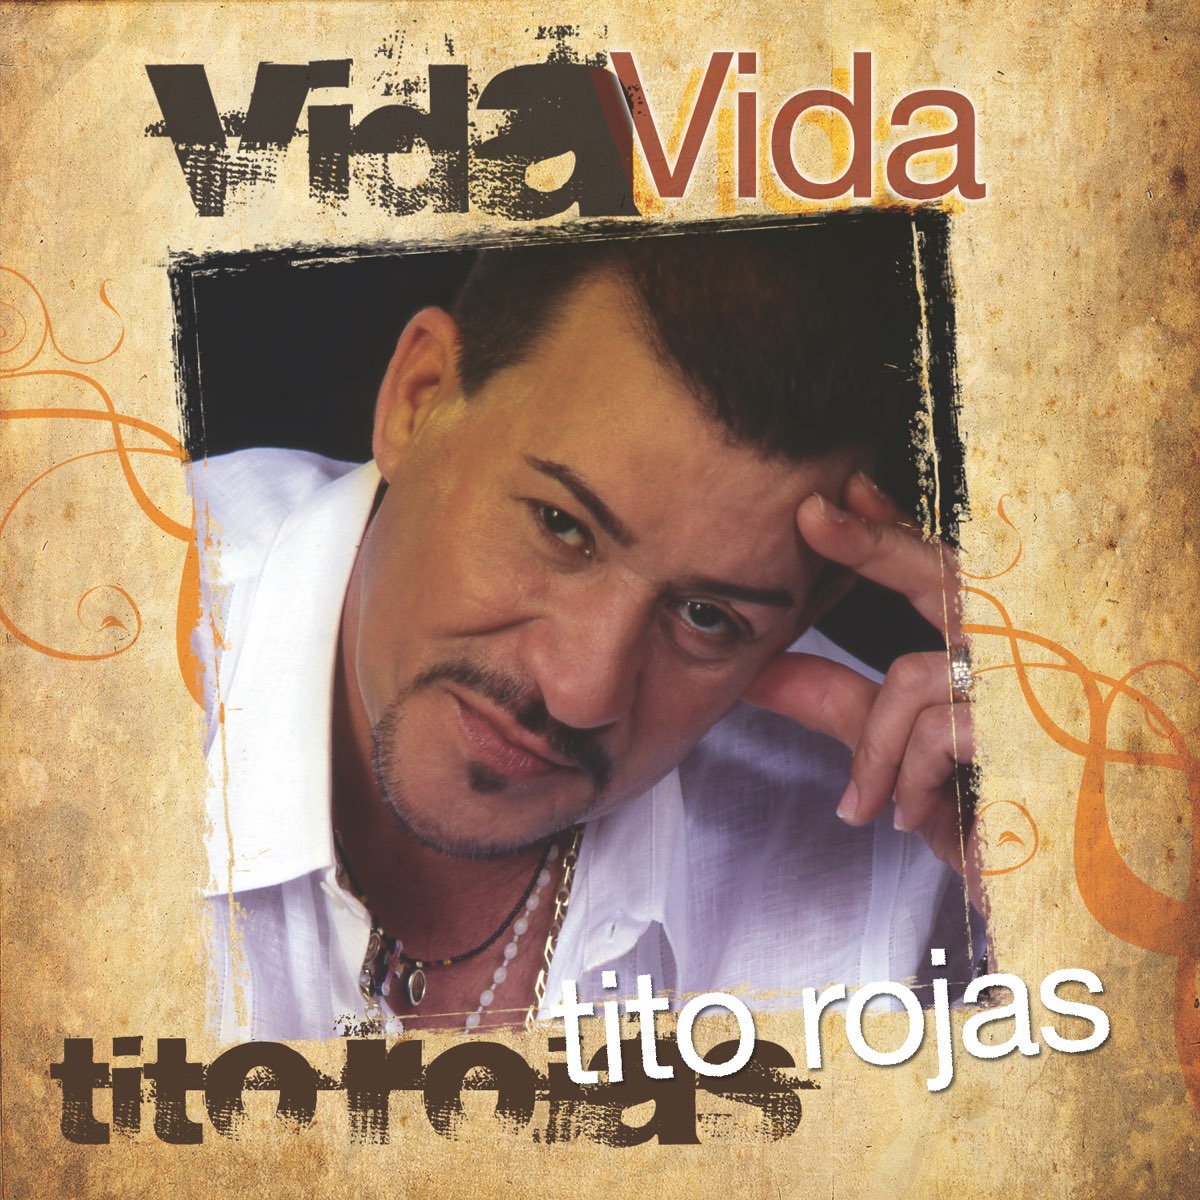 Vida by Tito Rojas on Apple Music